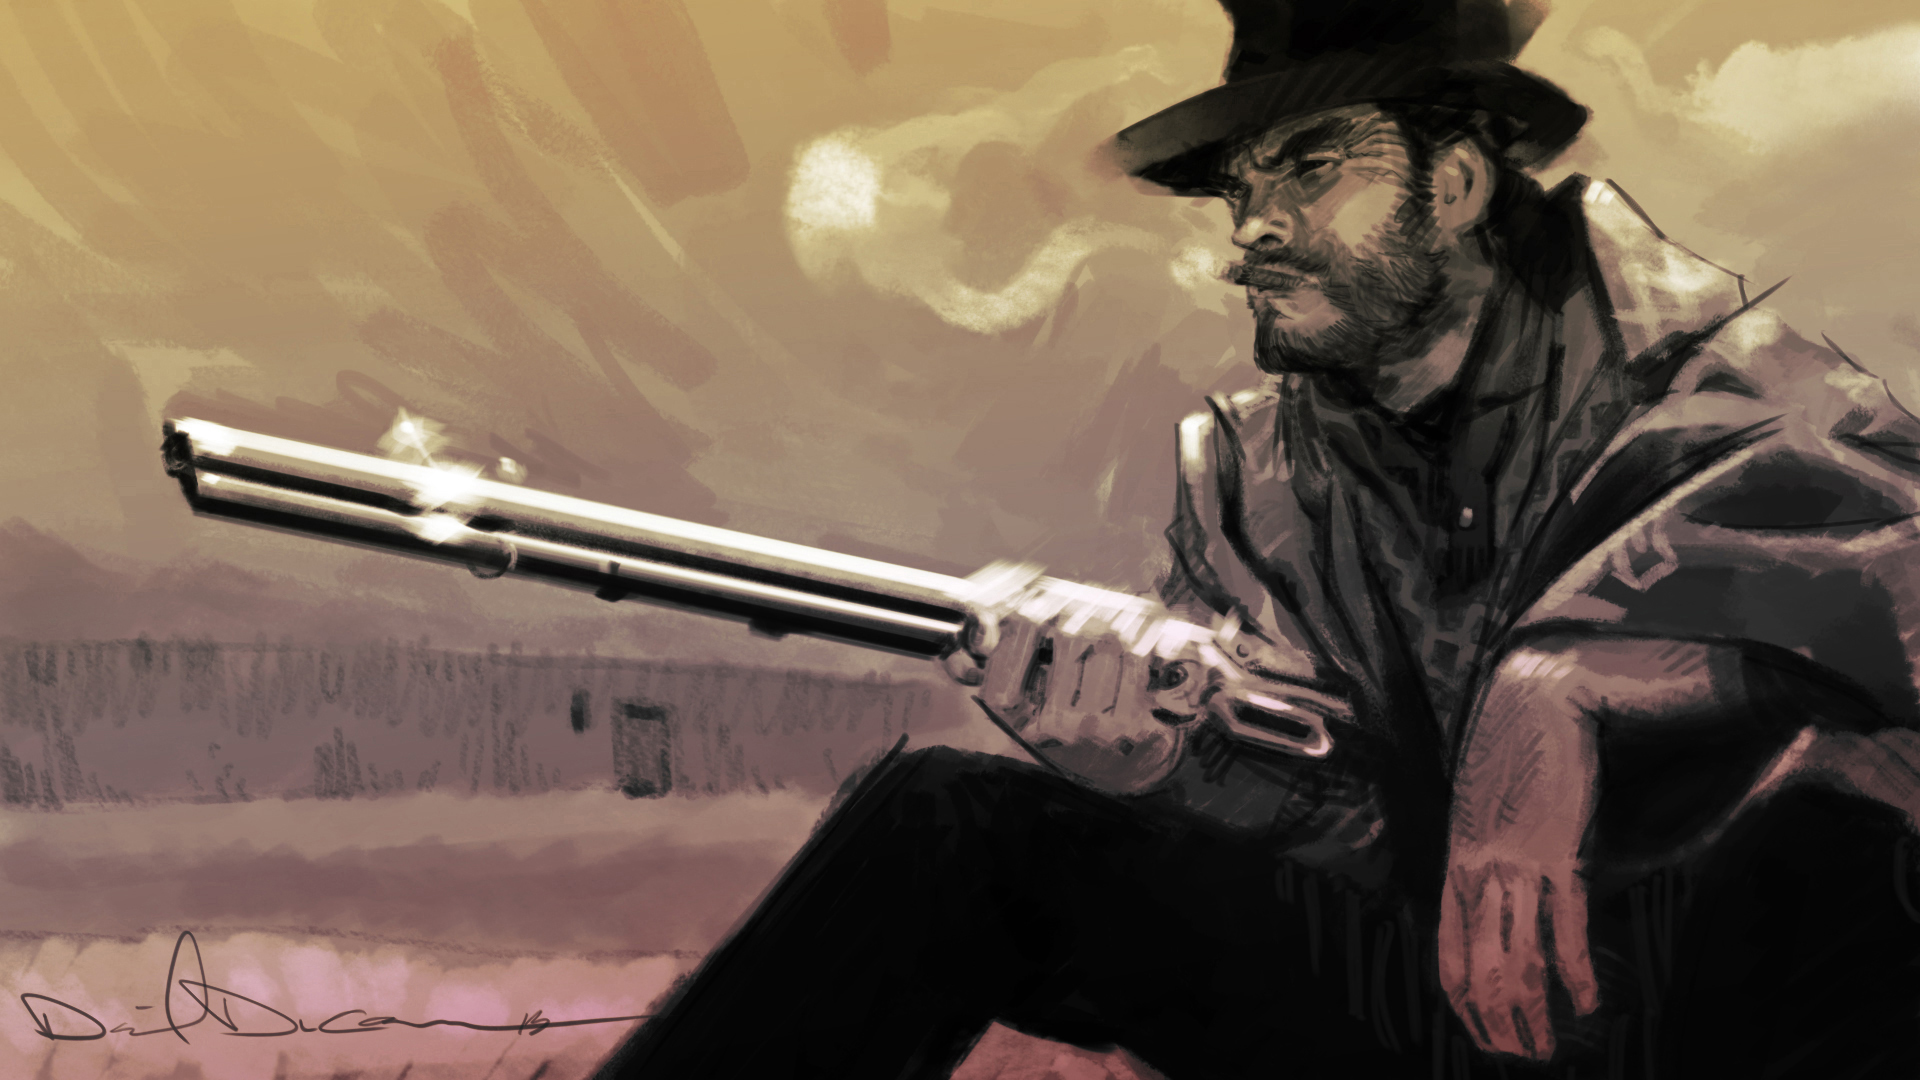 Download Clint Eastwood Cowboy Fanart Wallpaper | Wallpapers.com